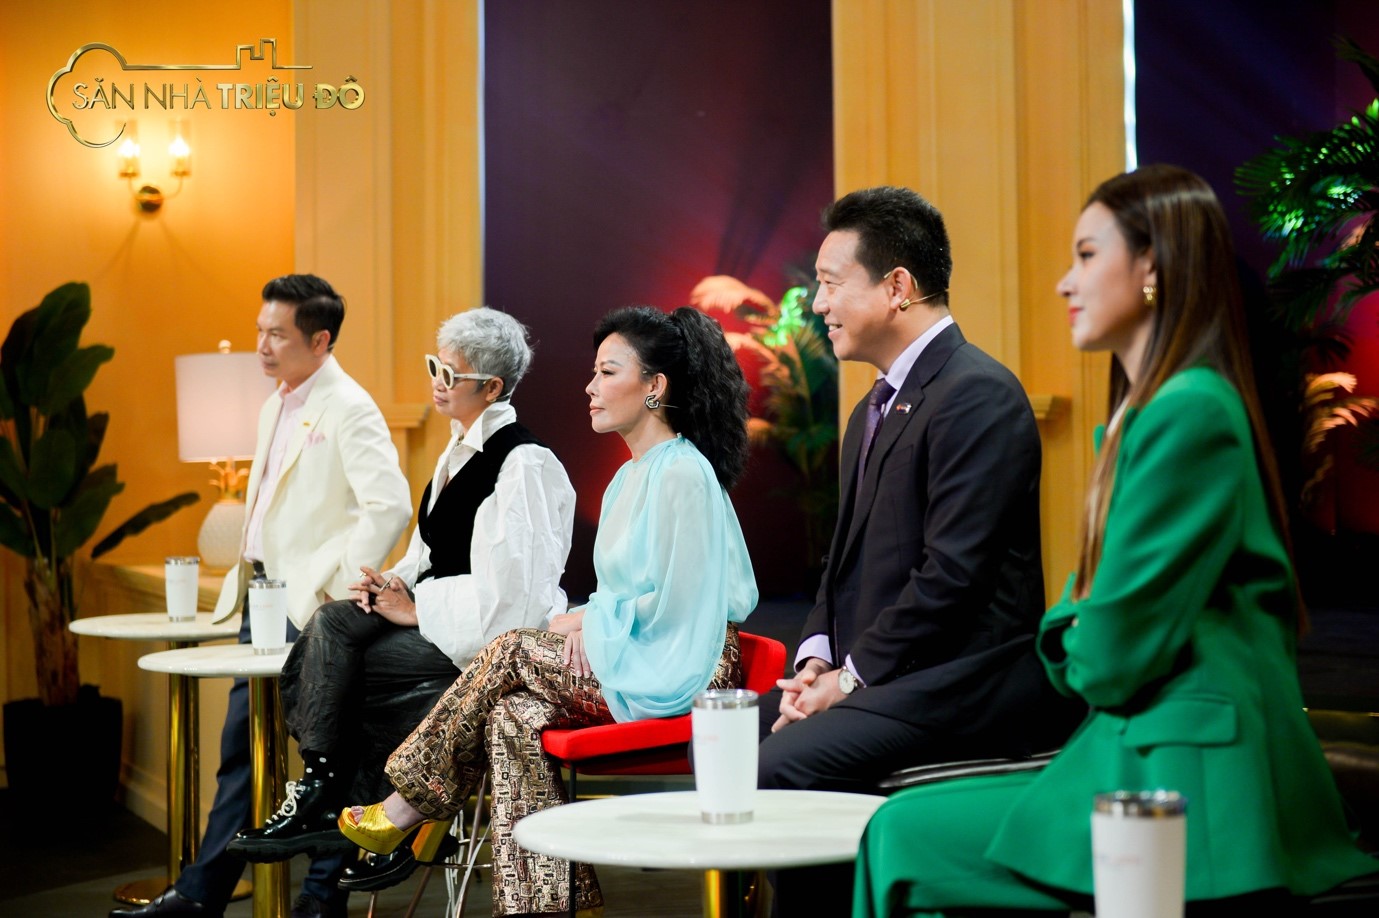 Bà Lệ Thu (giữa) cùng các thành viên ban giám khảo chương trình Săn Nhà Triệu Đô đang lắng nghe phần thuyết trình của các thí sinh. Ảnh: SNTĐ